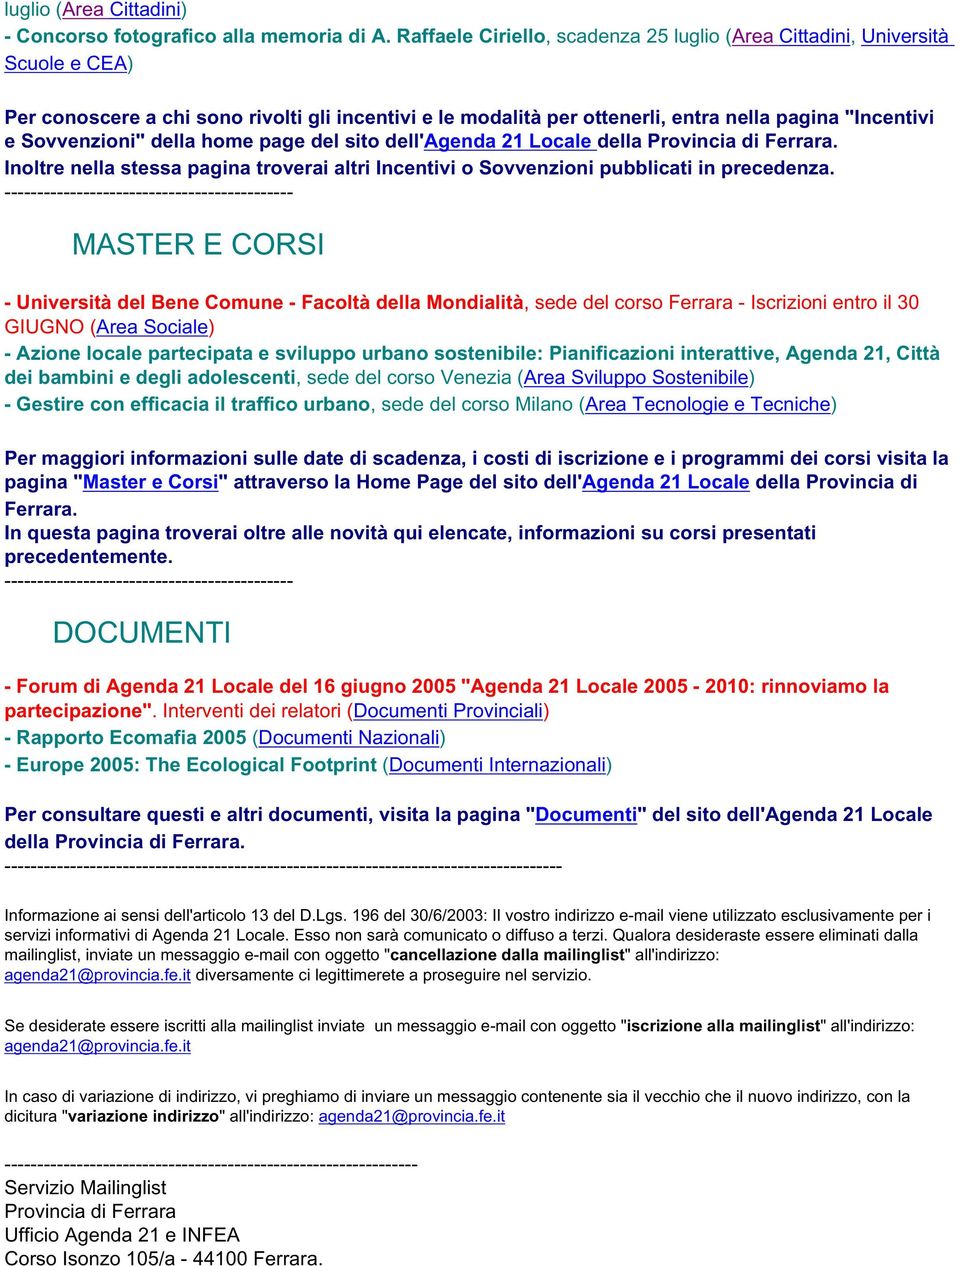 Sovvenzioni" della home page del sito dell'agenda 21 Locale della Provincia di Ferrara. Inoltre nella stessa pagina troverai altri Incentivi o Sovvenzioni pubblicati in precedenza.